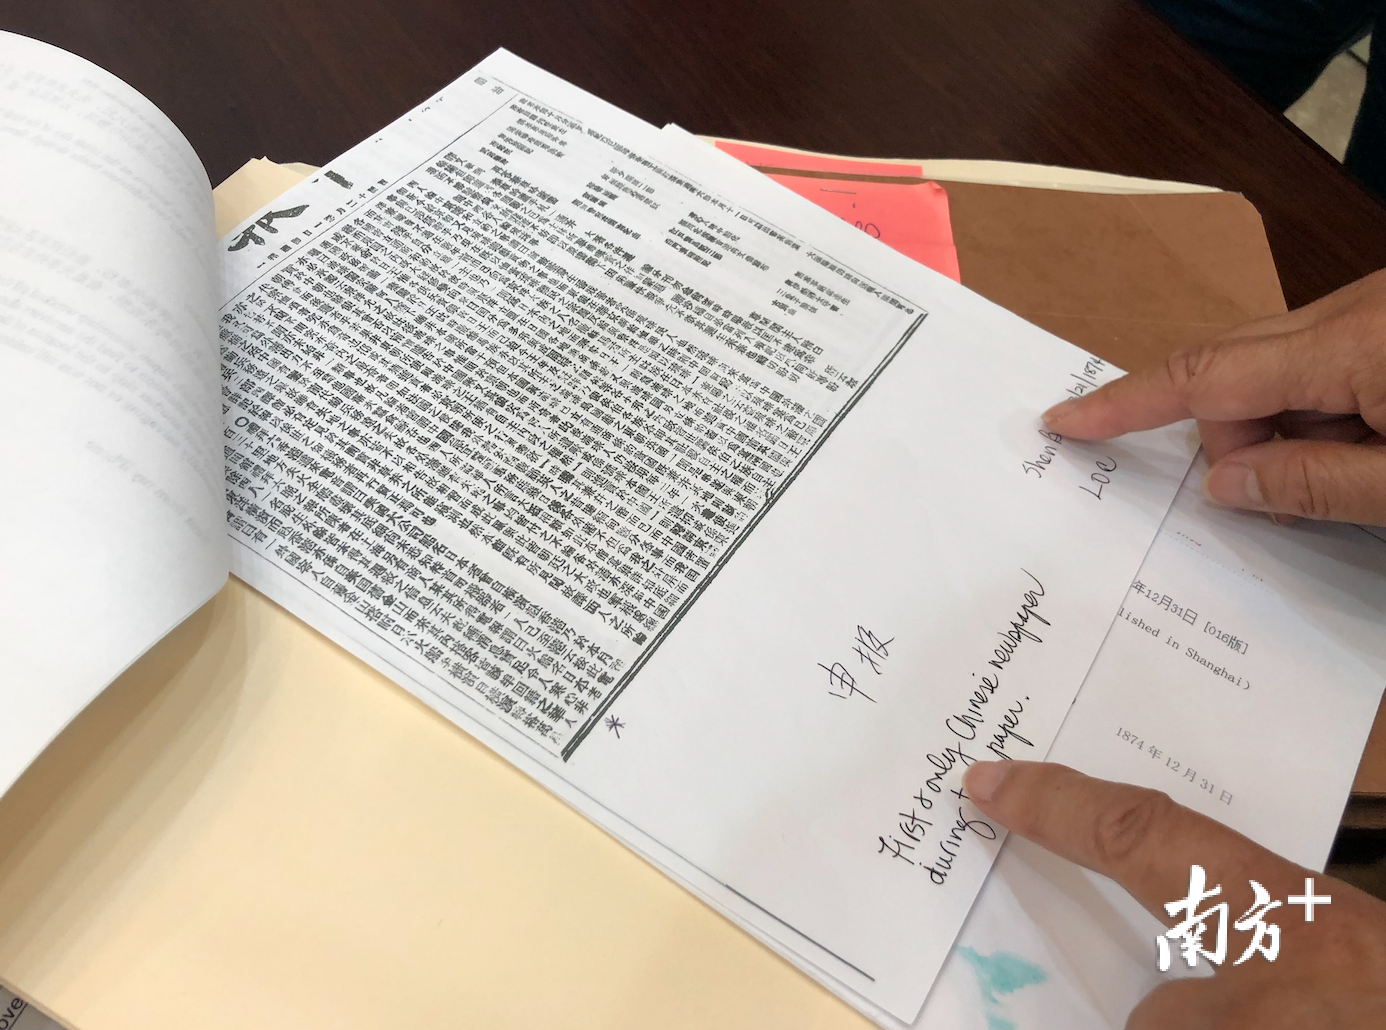 陈李眷慈将找寻到的《申报》资料打印出来保存。